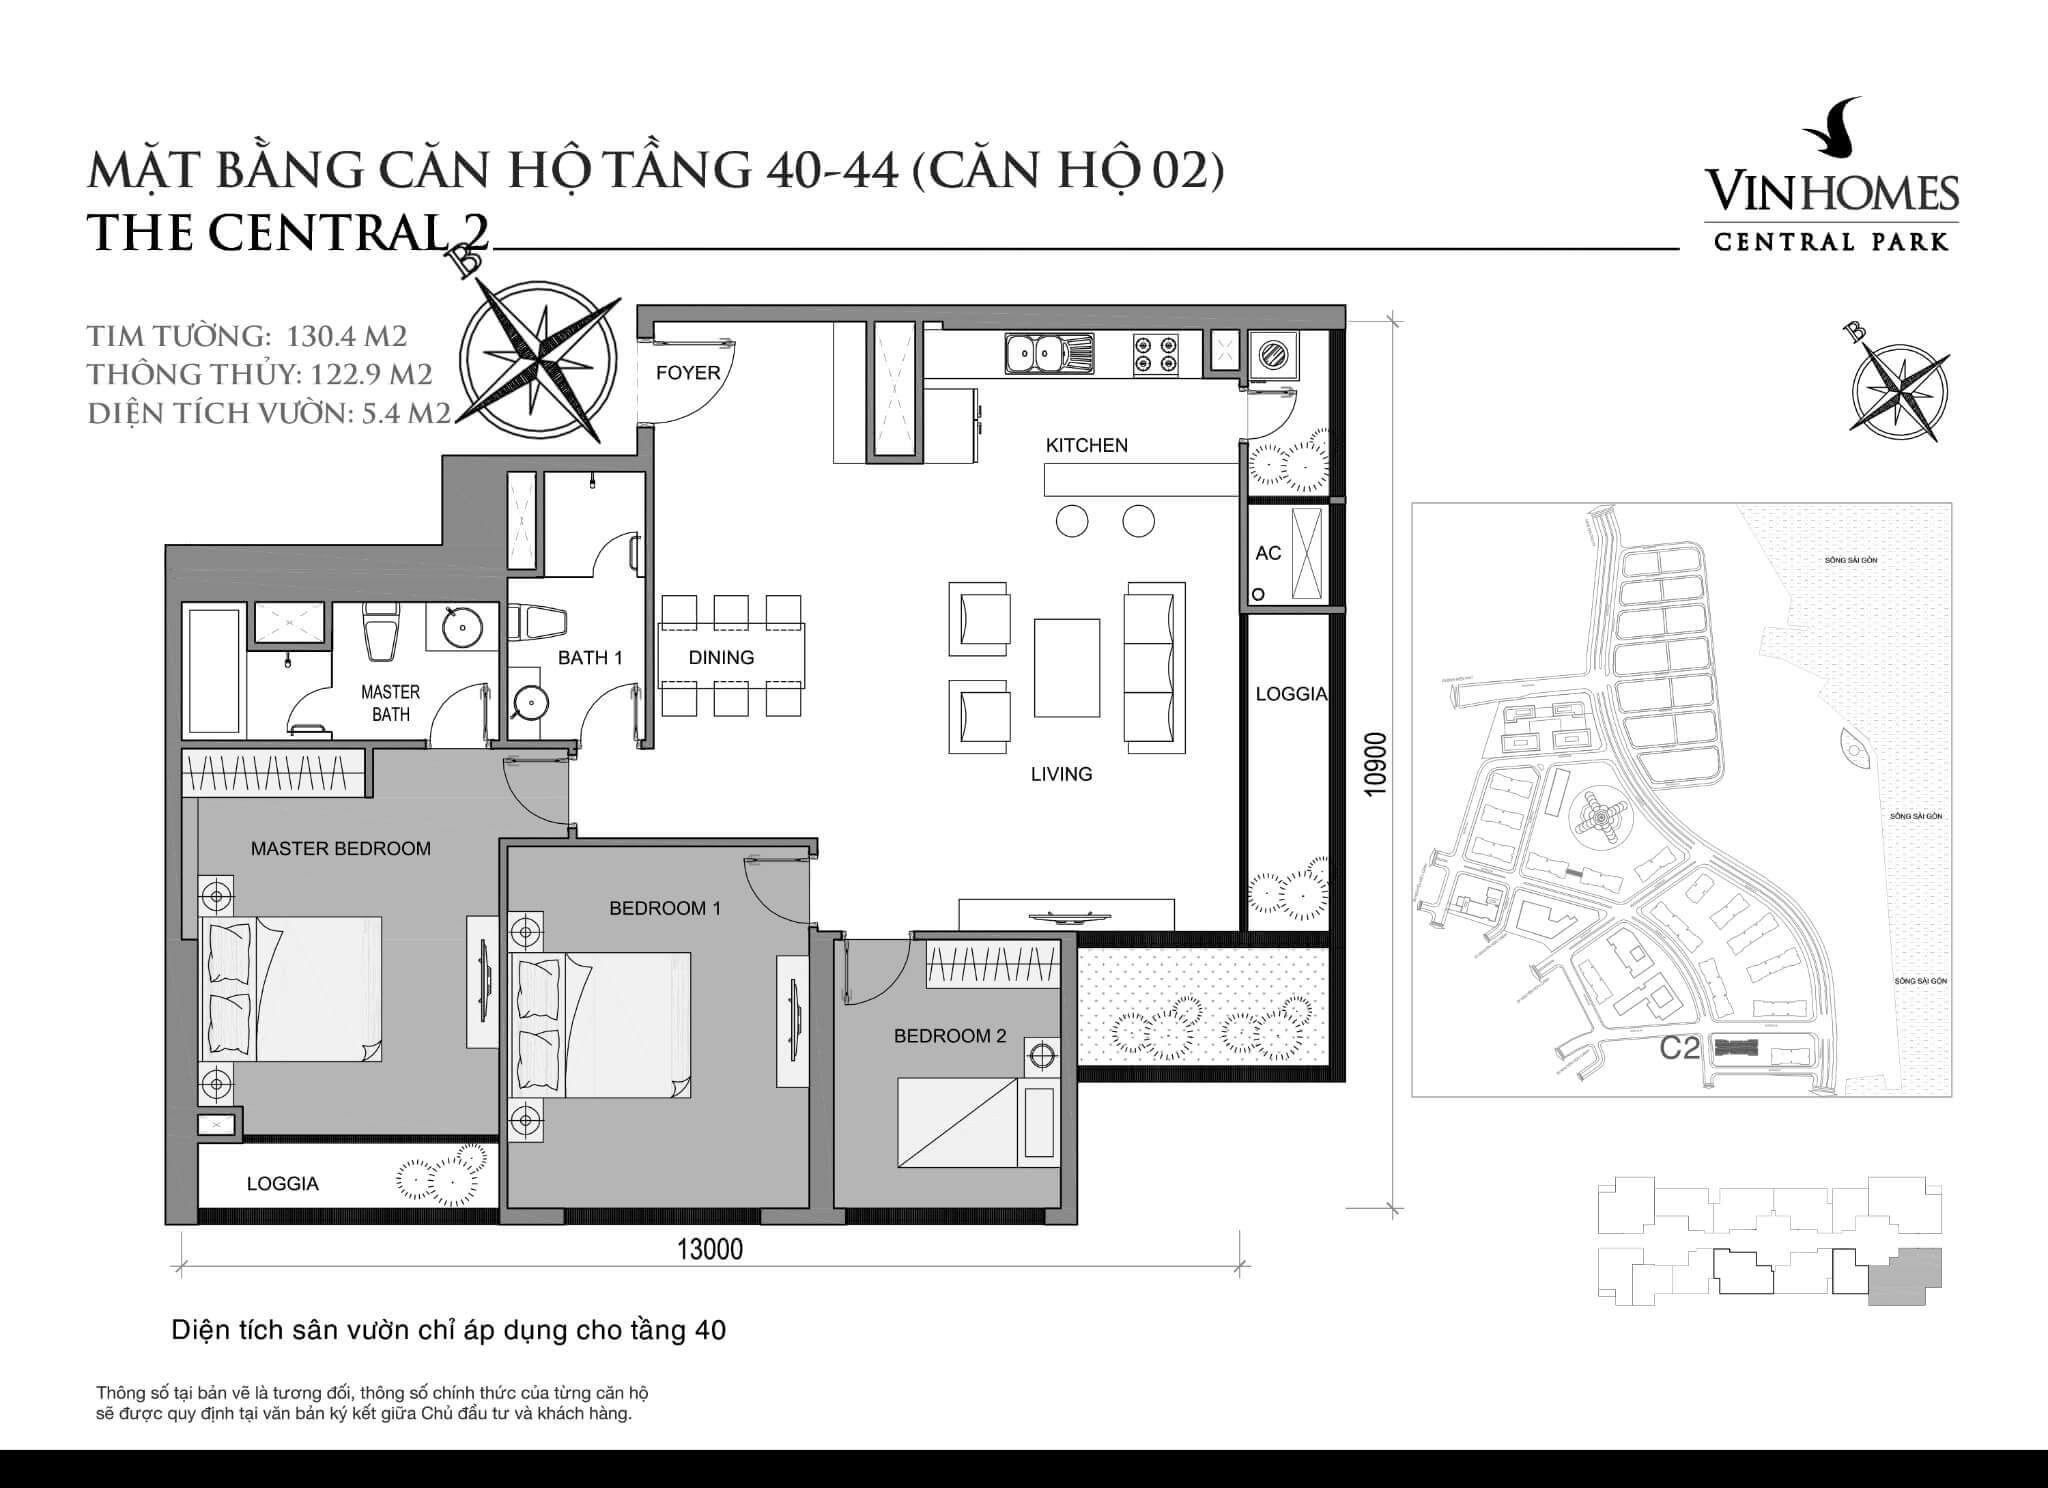 layout căn hộ số 2 tầng 40-44 Central 2